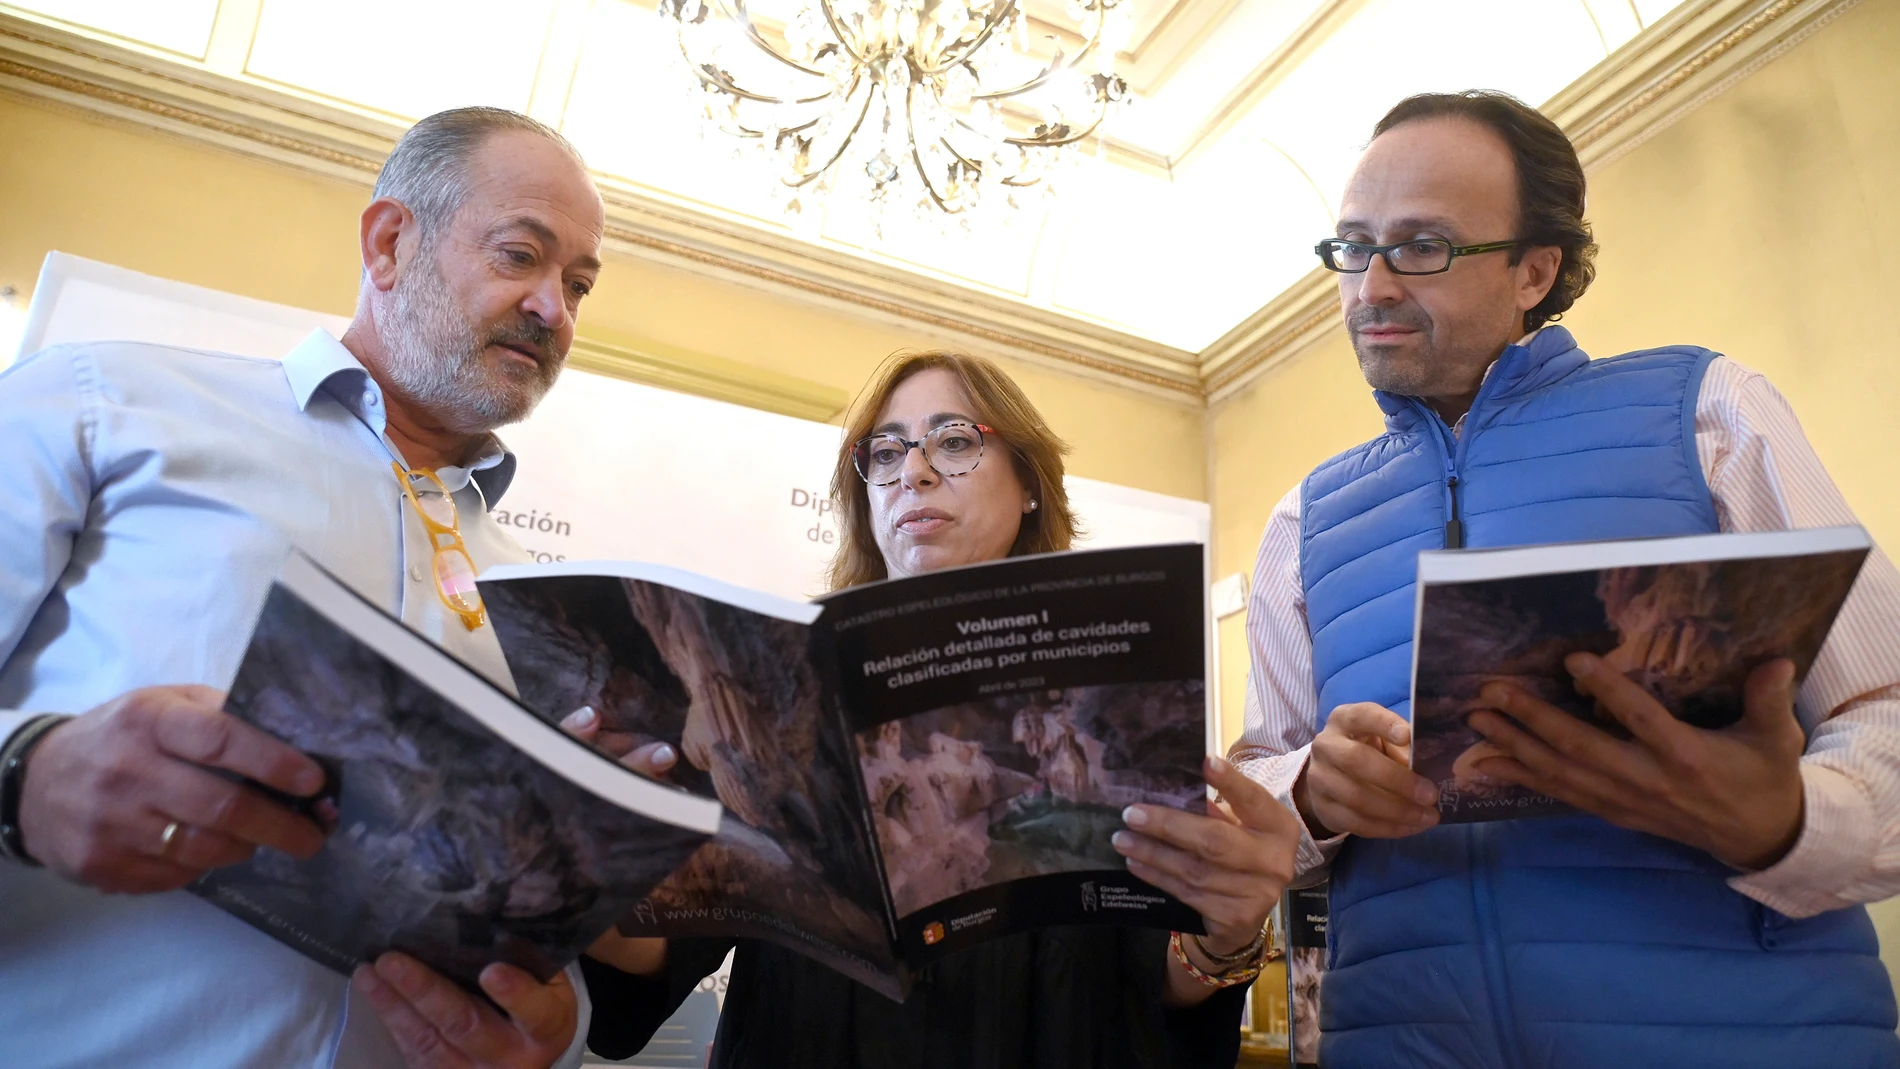 Presentación de la nueva publicación en Burgos